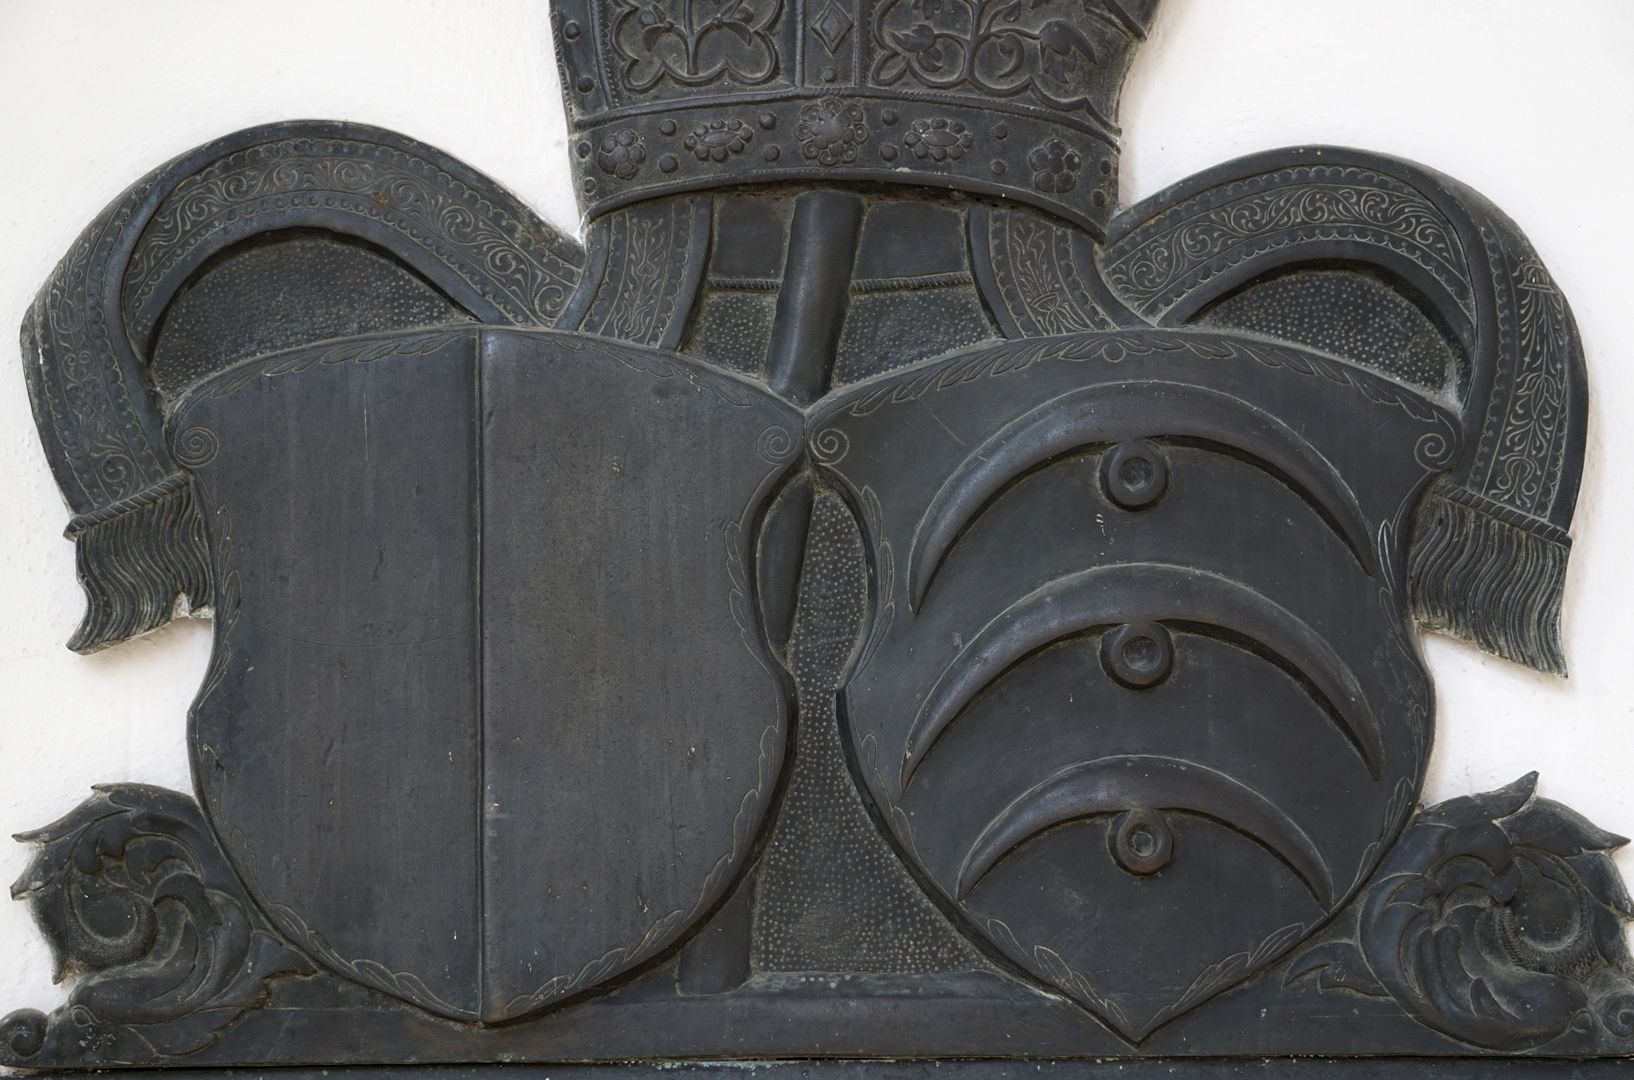 Epitaph des Bischofs Christoph von Stadion (Wandfeld sII) links das Wappen des Hochstifts Augsburg (gespalten von Rot und Silber), rechts das Stammwappen derer von Stadion mit drei halbmondförmigen Wolfsangeln